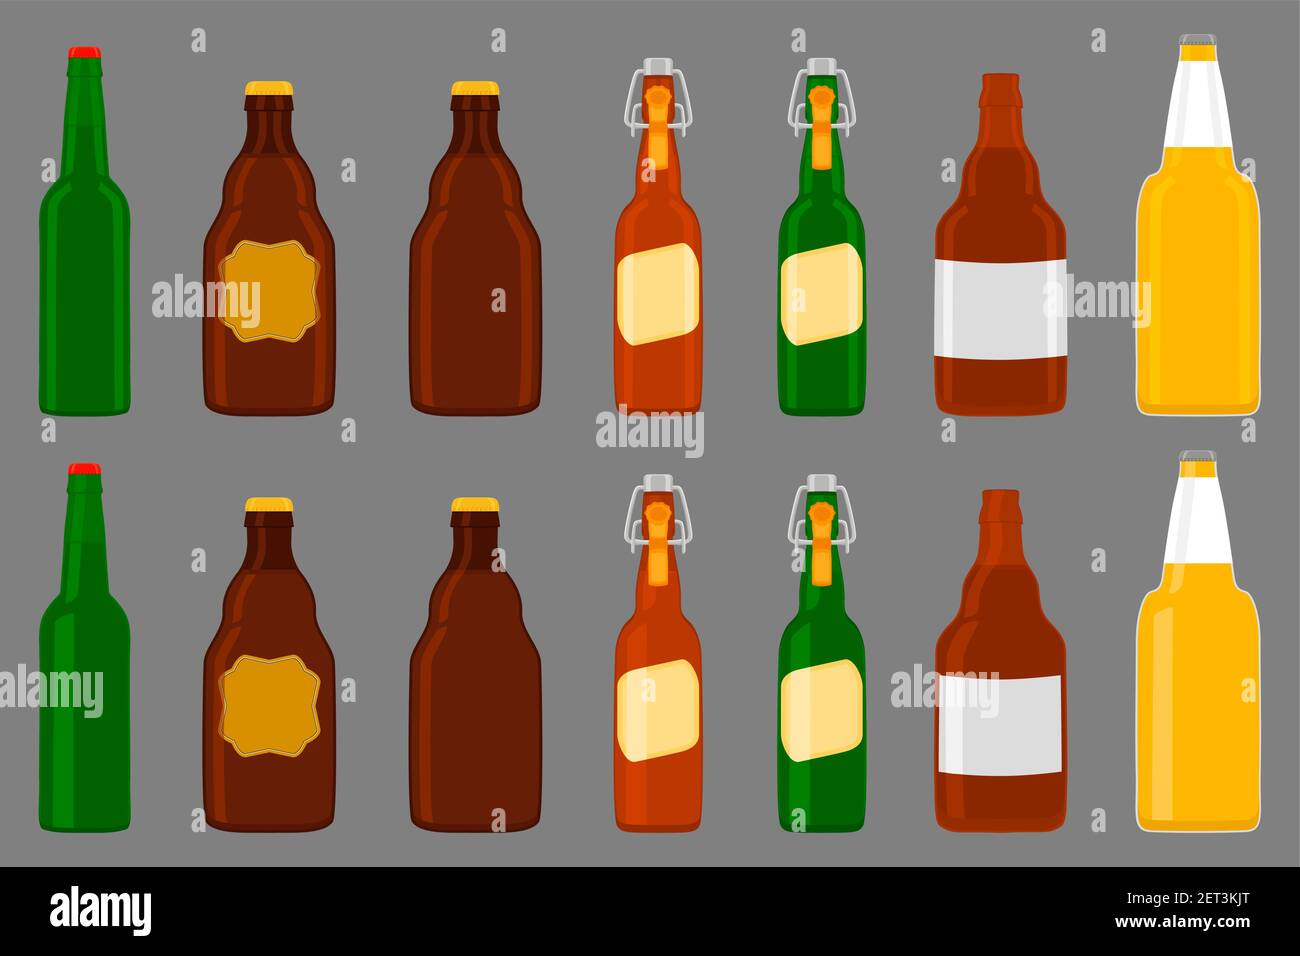 Illustration sur le thème grand kit bouteilles de bière en verre avec couvercle pour la brasserie. Bière à motifs composée de nombreuses bouteilles de verre identiques sur fond sombre. GLA Illustration de Vecteur